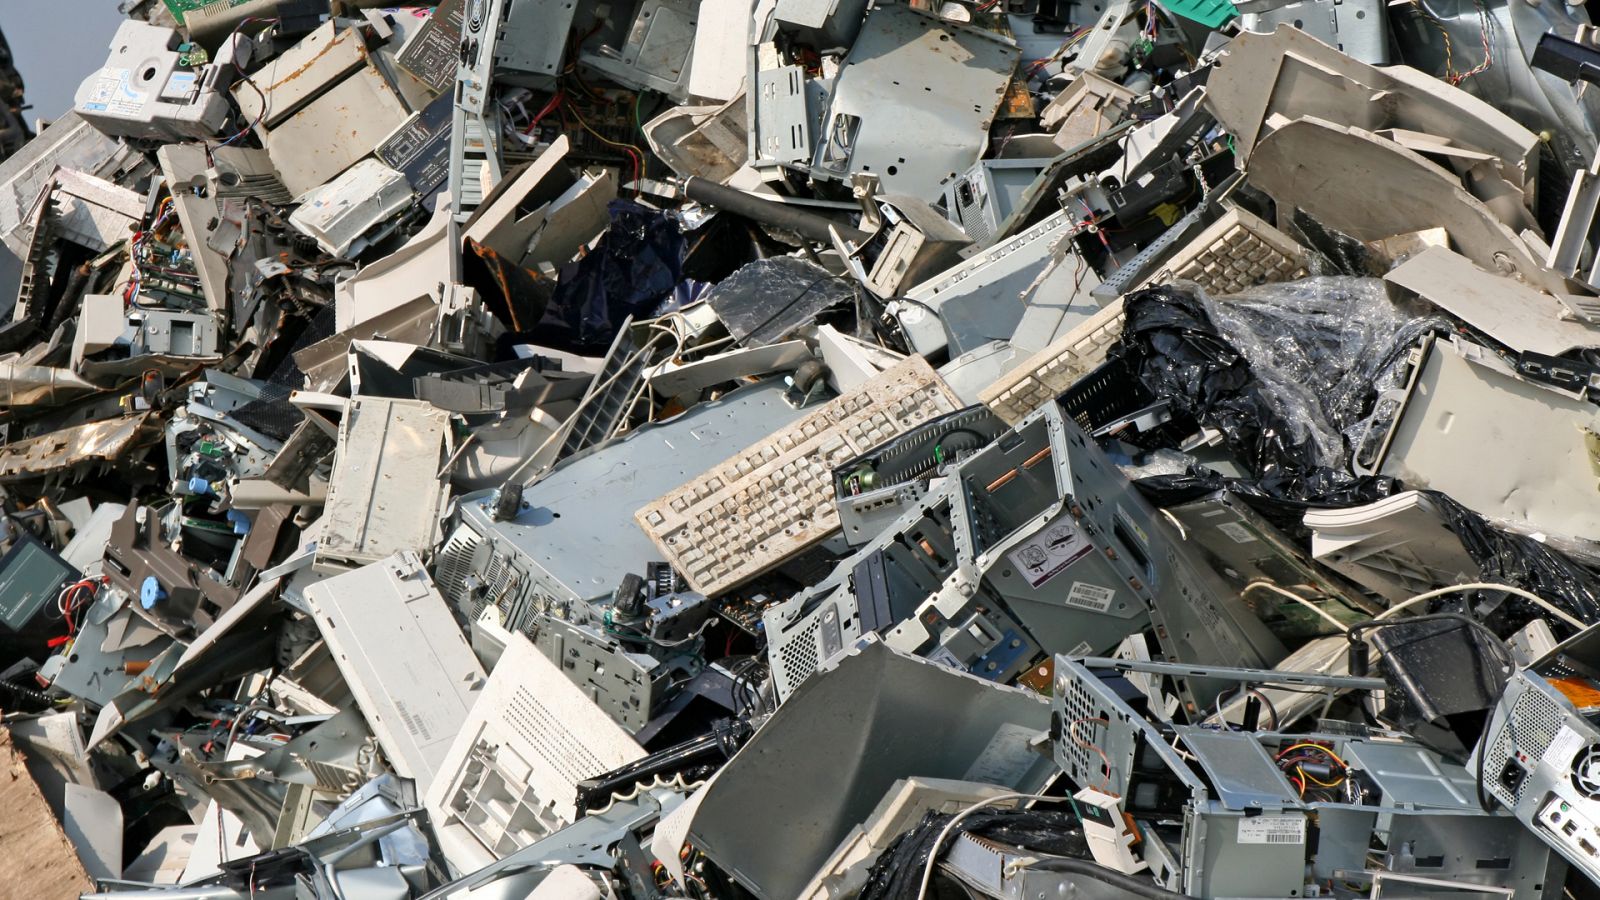 Somos documentales - Tráfico de residuos electrónicos. La tragedia electrónica - Documental en RTVE